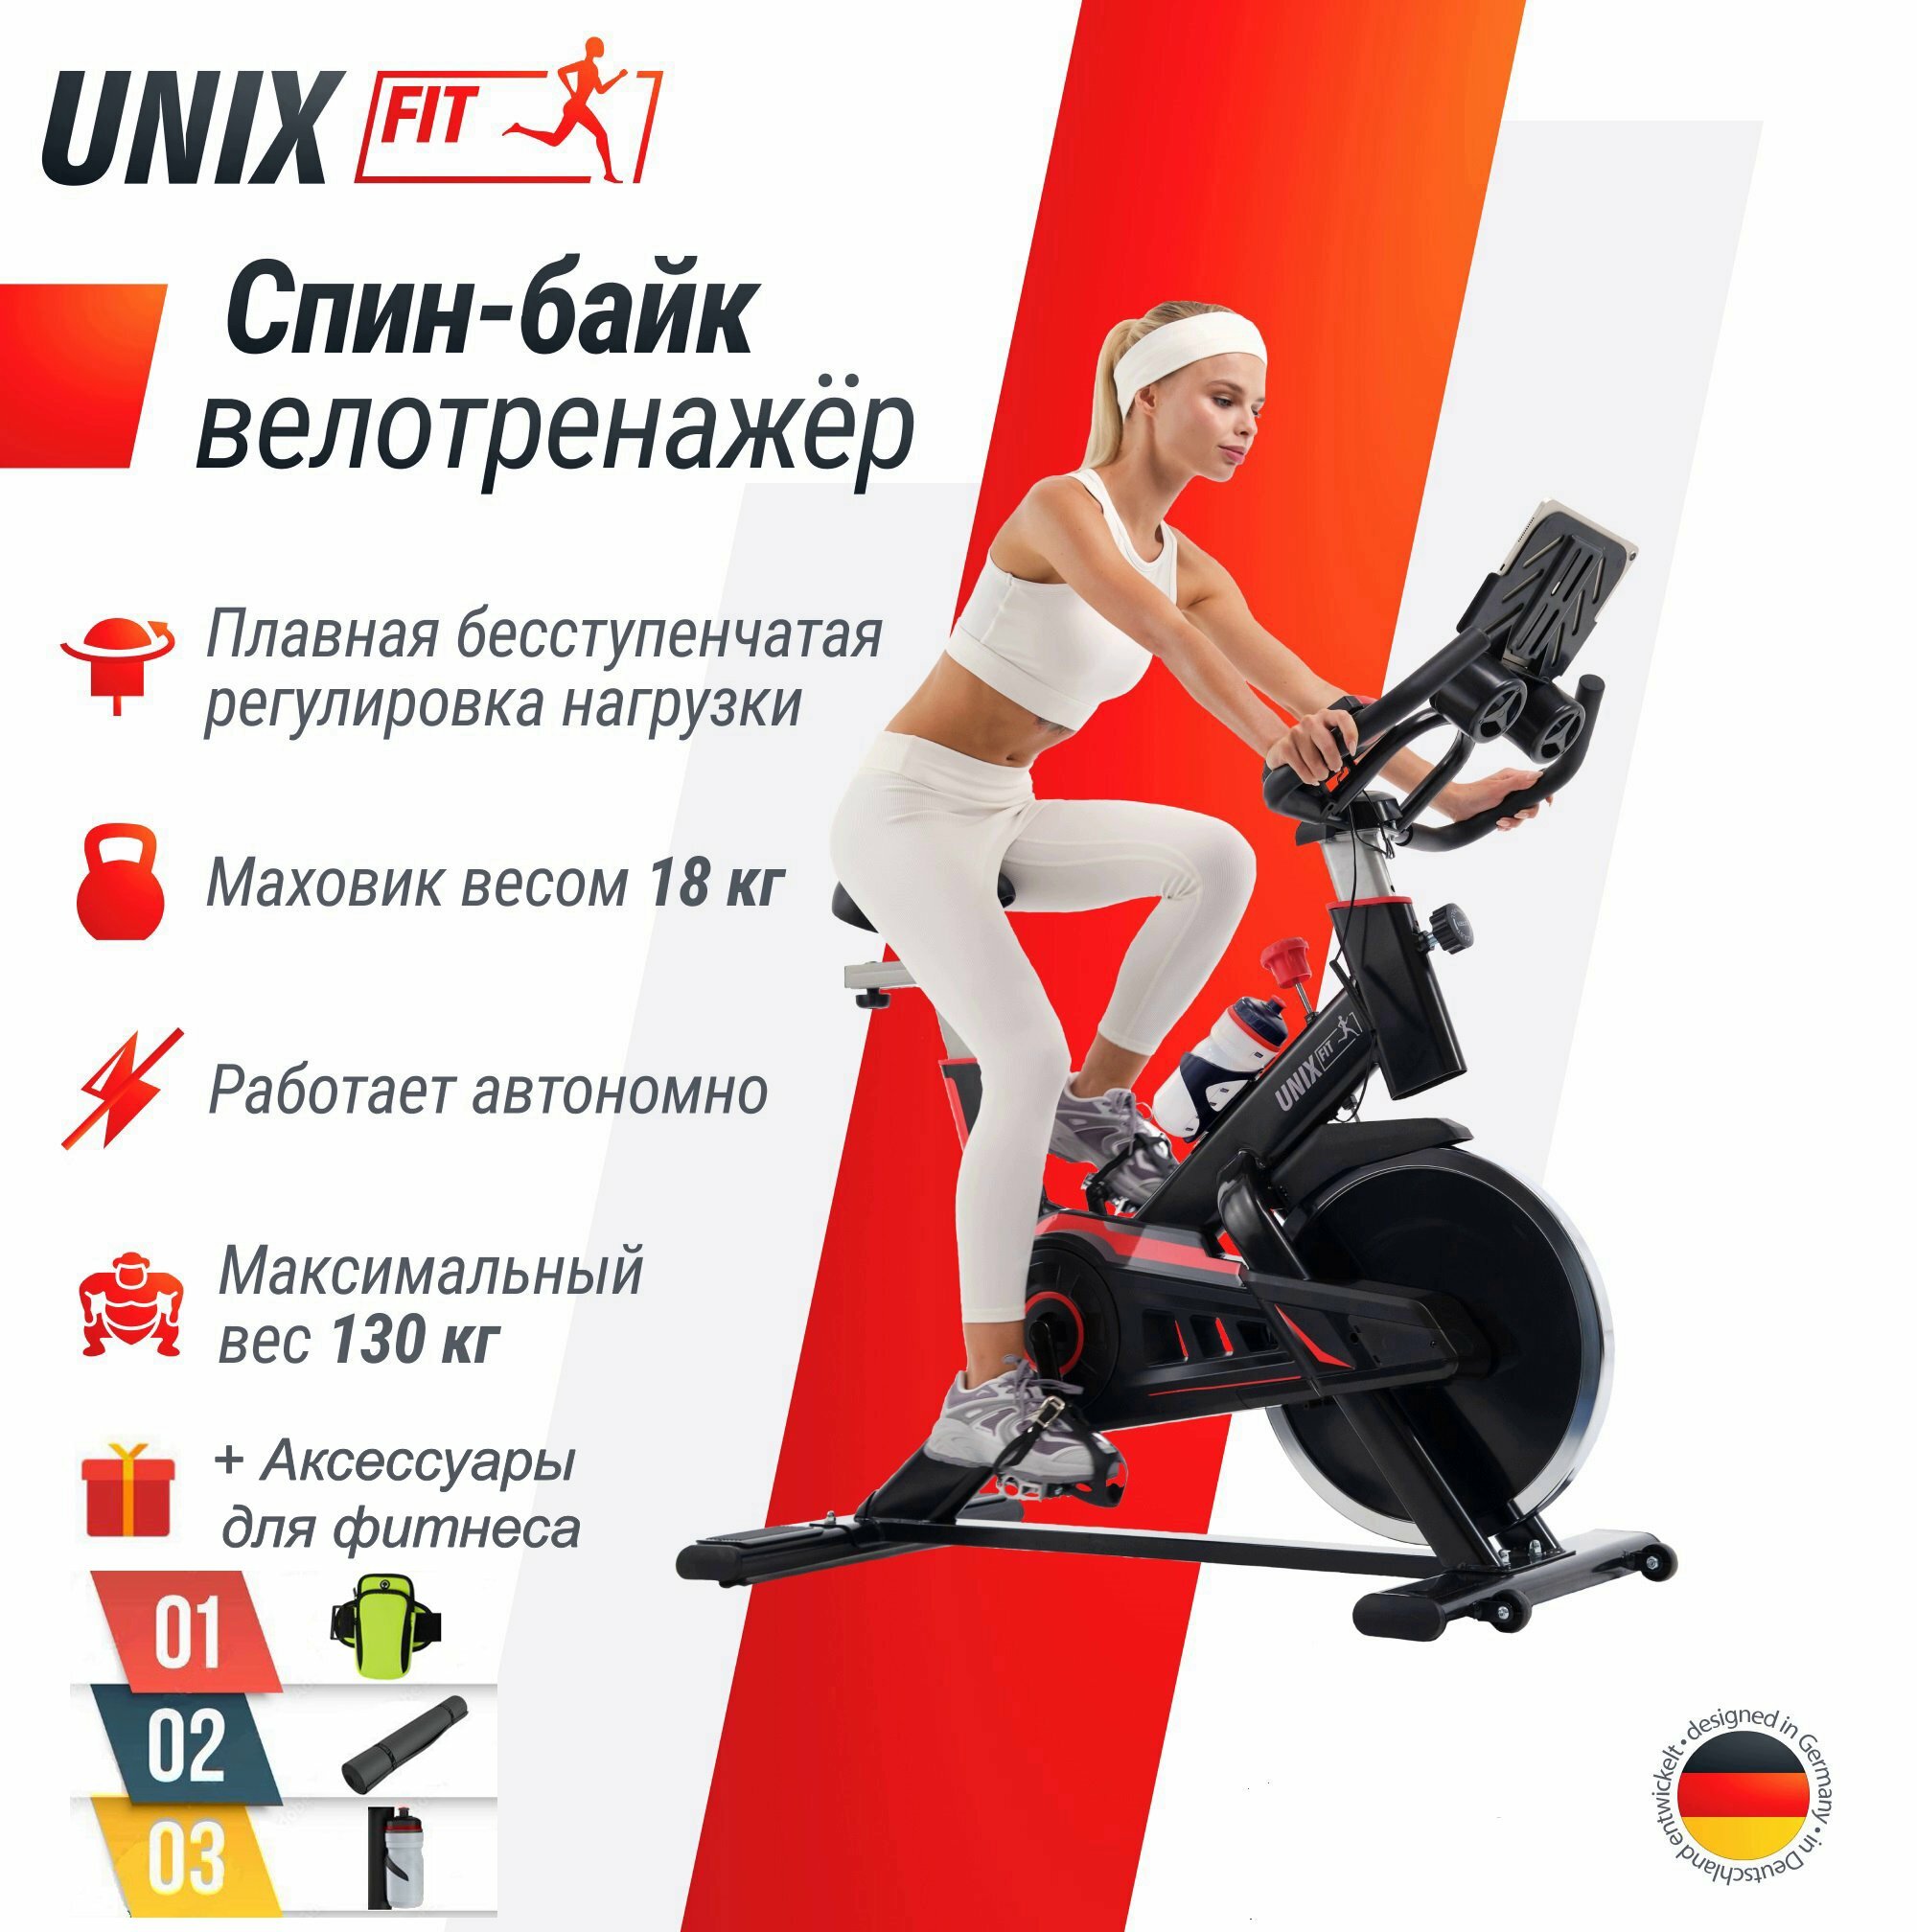 Велотренажер Спин-байк UNIX Fit SB-520 PRO + аксессуары для фитнеса